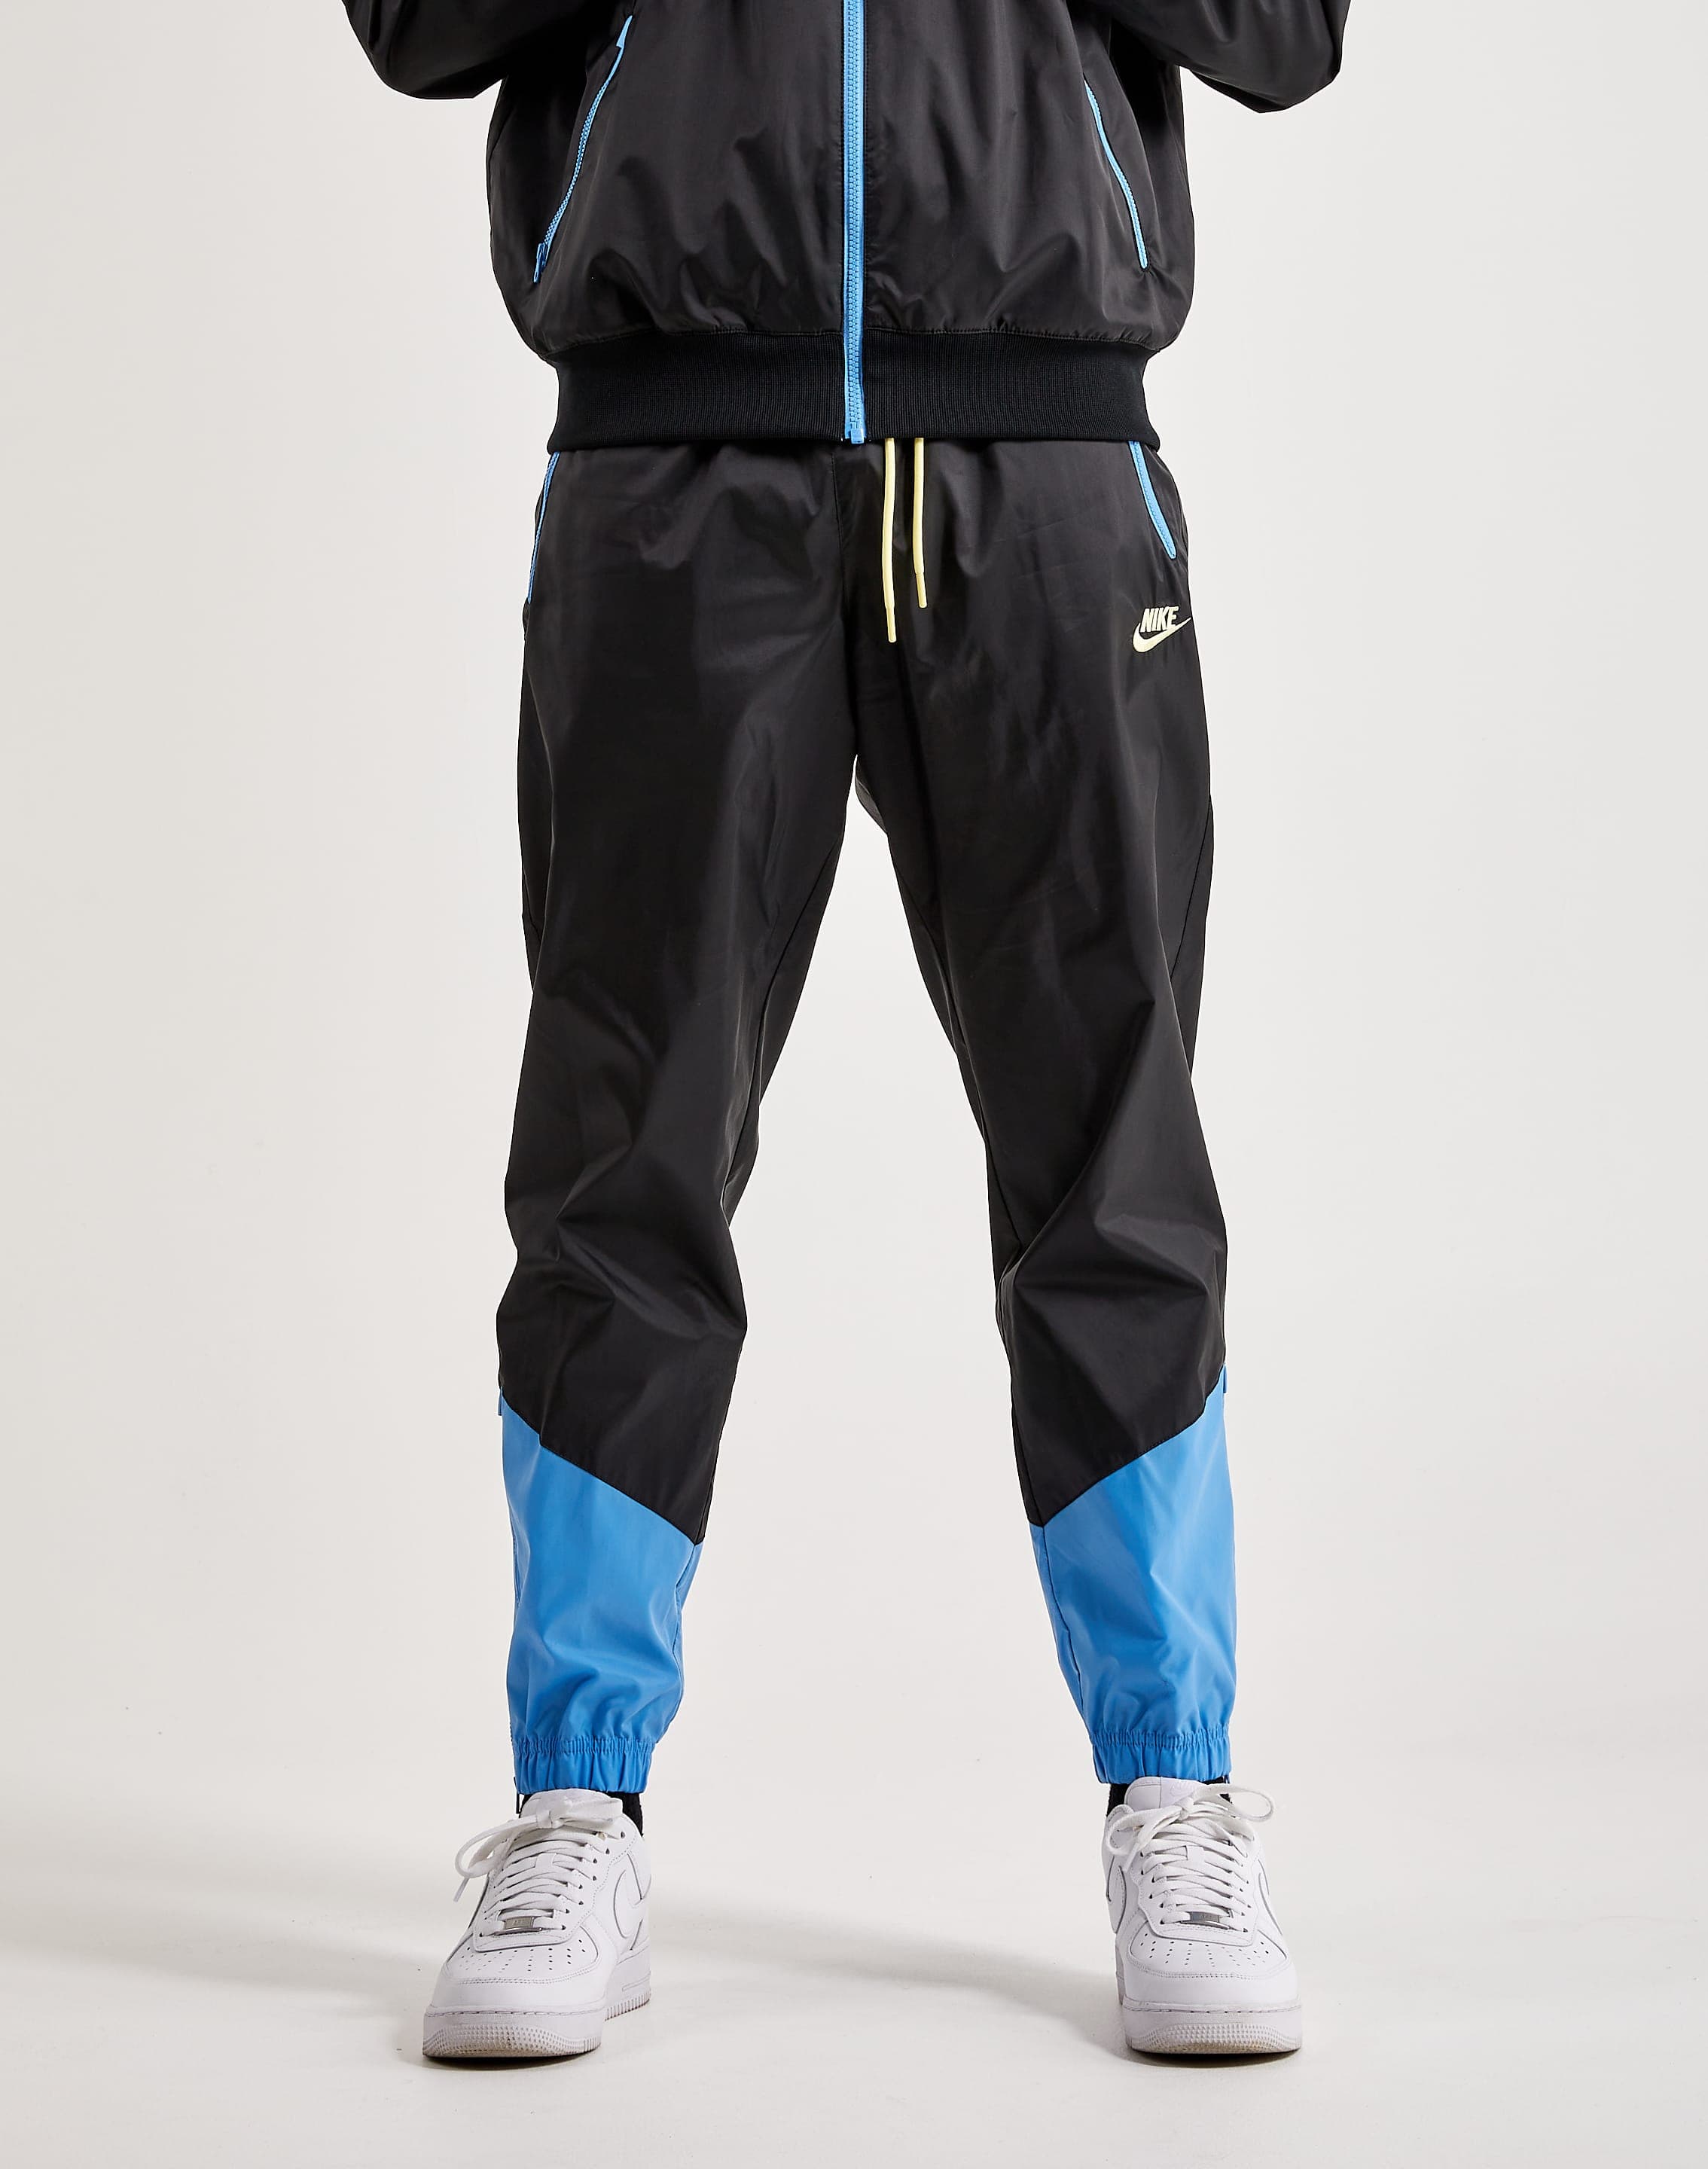 VINTAGE Nike Track Pants Windbreaker - Zipper Ankle/pockets 